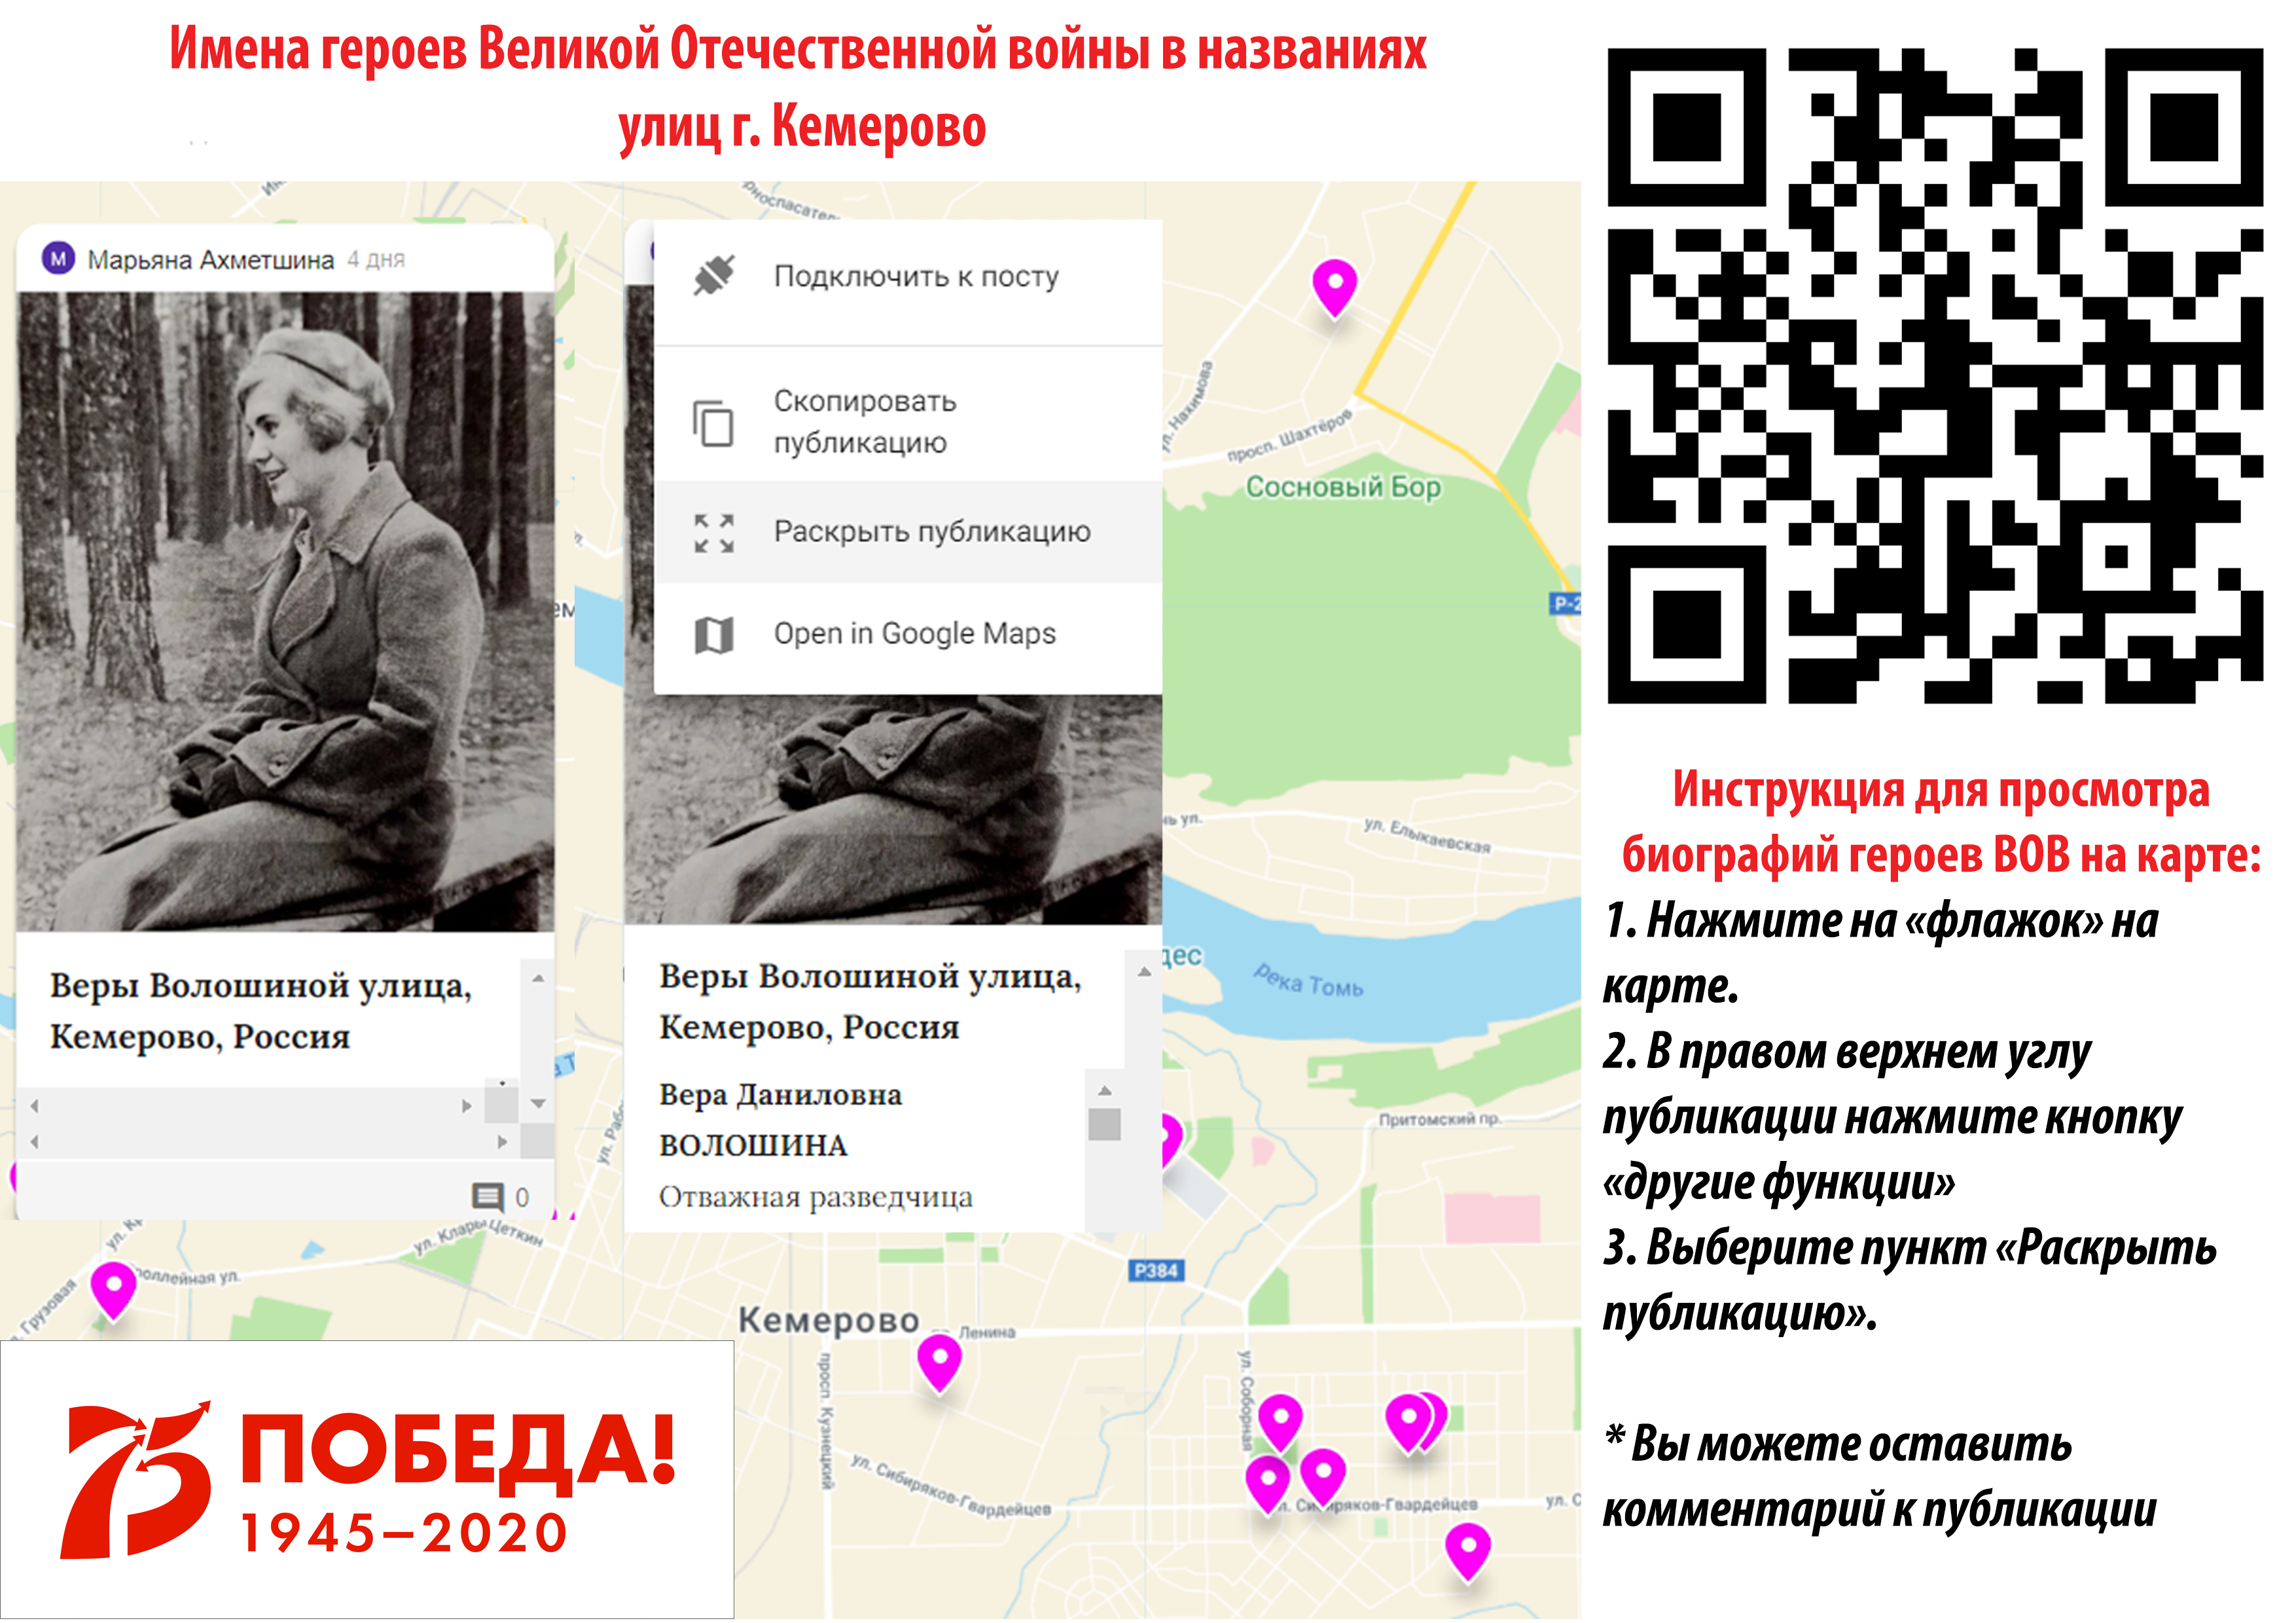 Онлайн-карта «Имена выдающихся личностей в названиях улиц г. Кемерово» —Школа №24 г. Кемерово